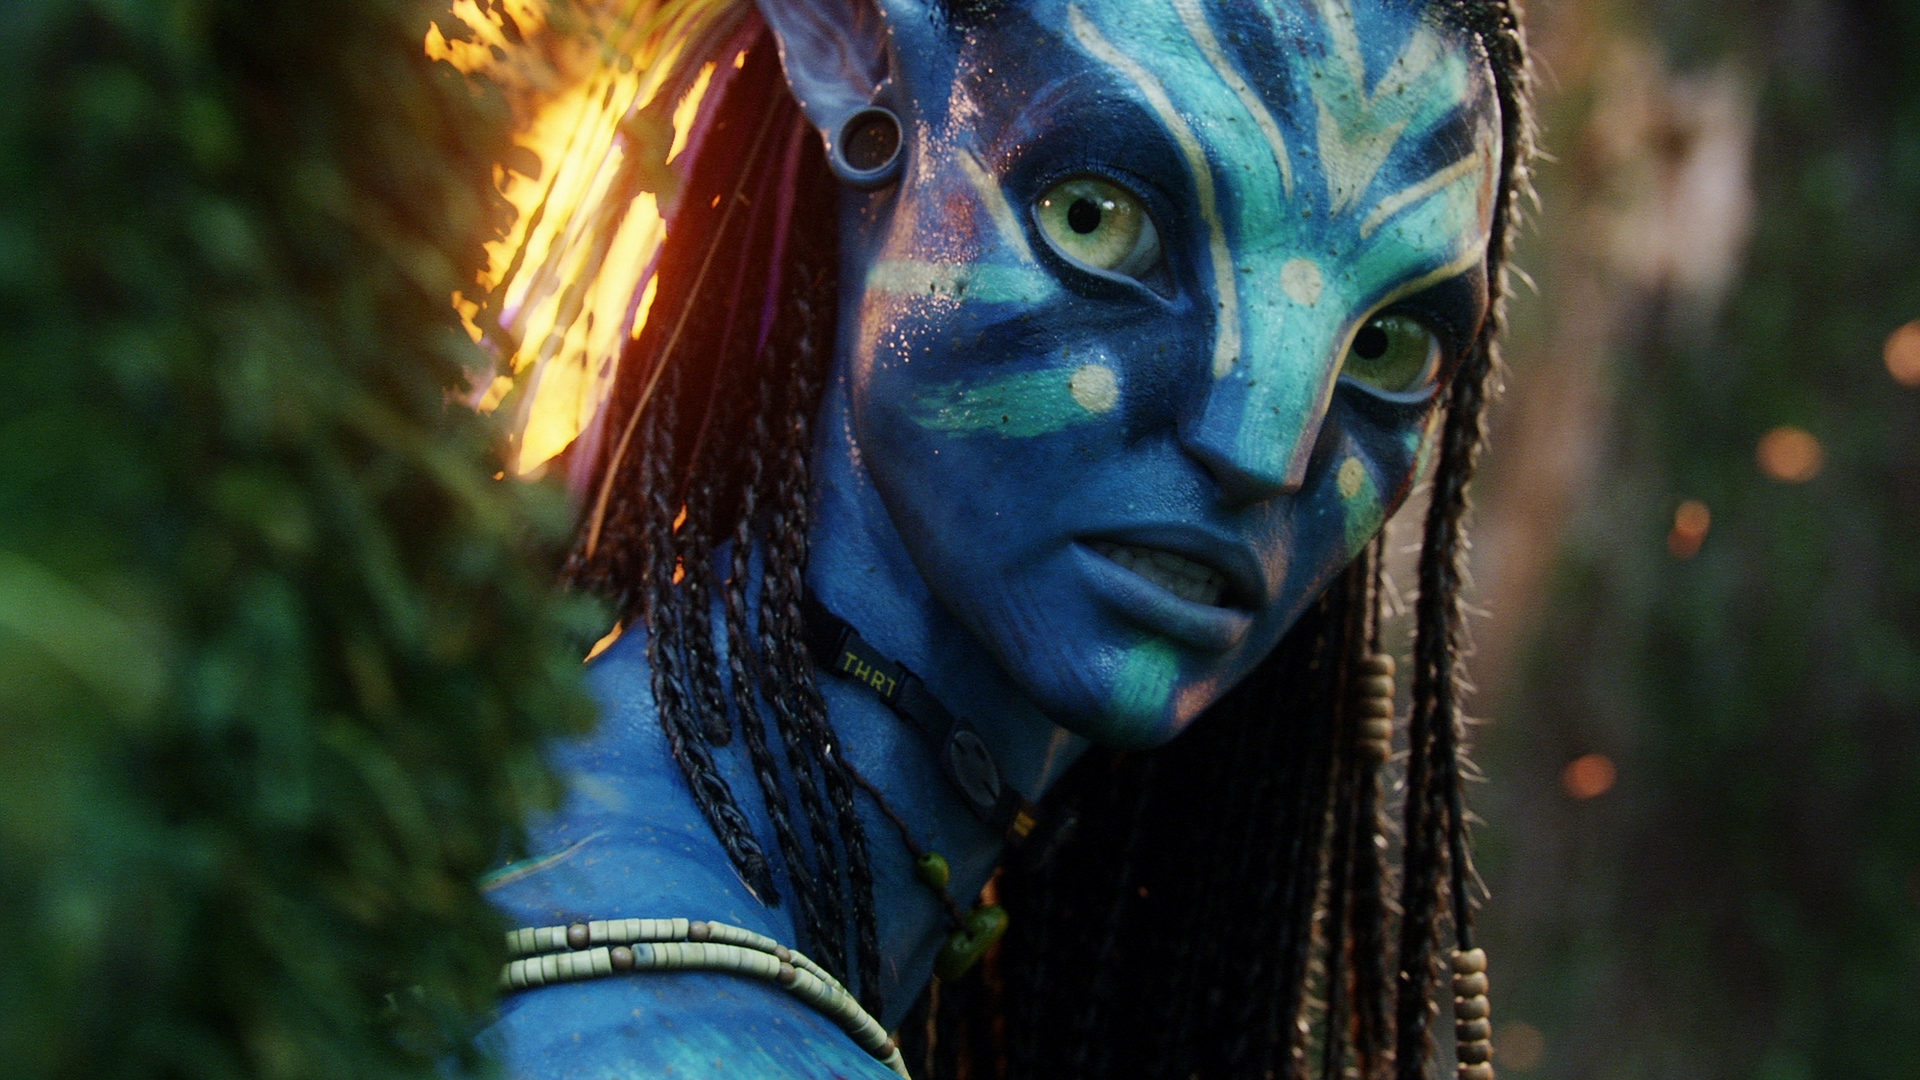 Blue Avatar Movie - Avatar Neytiri War Paint , HD Wallpaper & Backgrounds